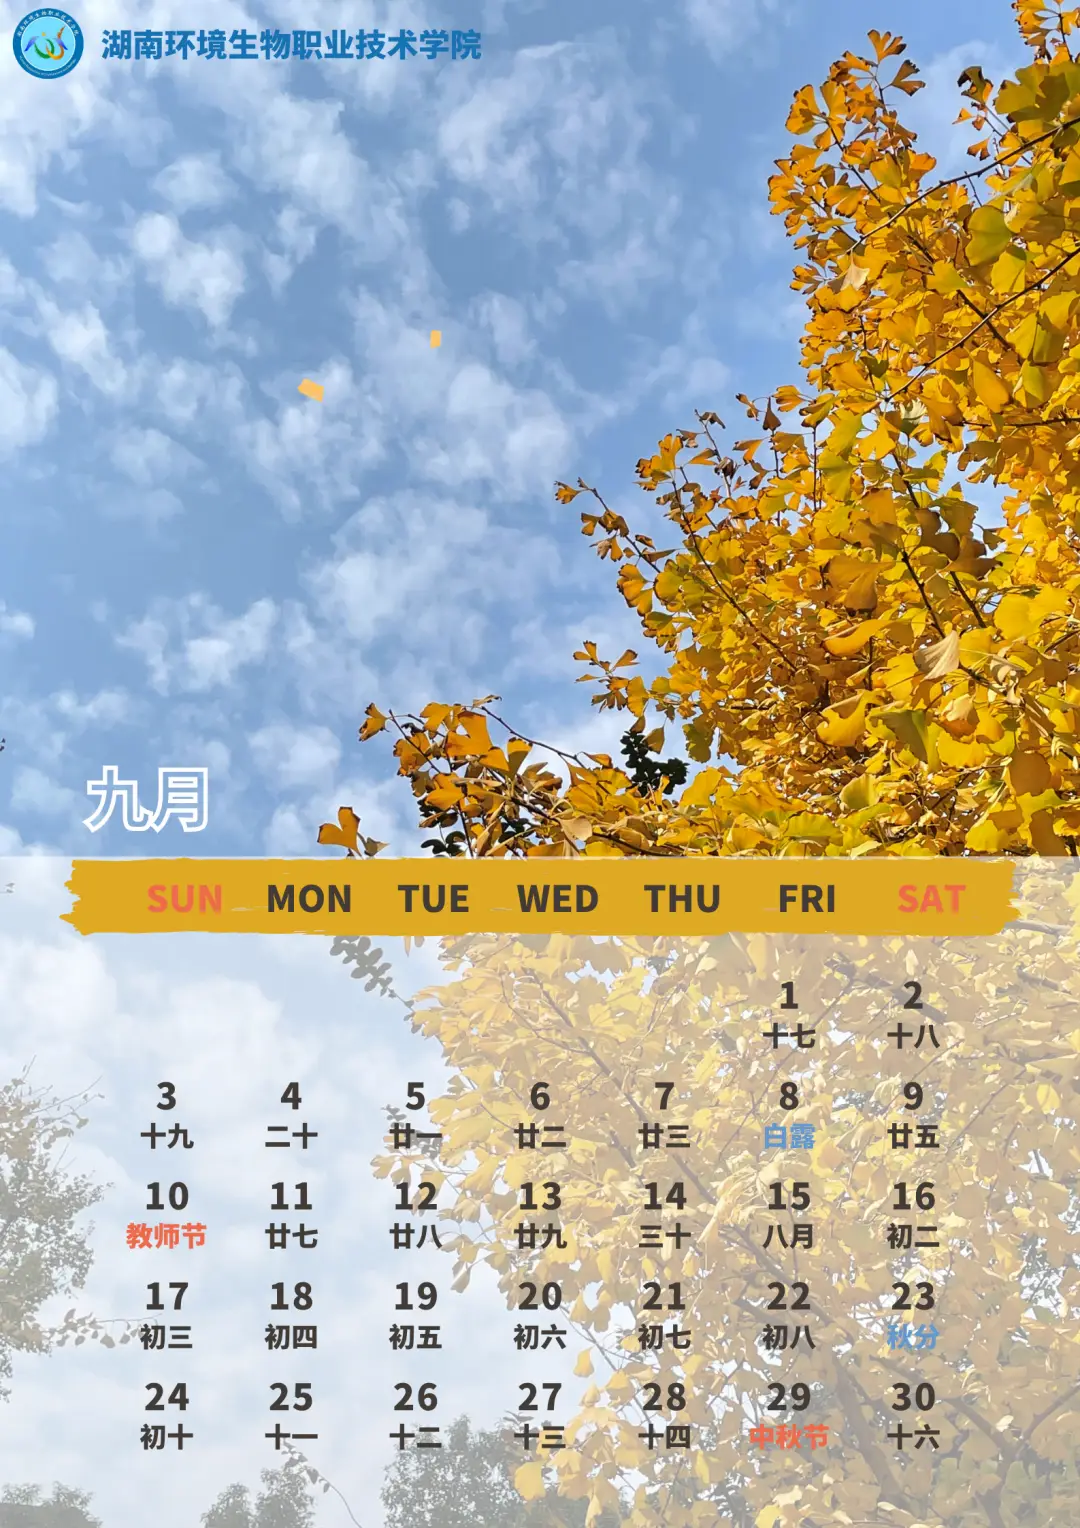 日历月份天数规律_10月日历_日历月和自然月的区别